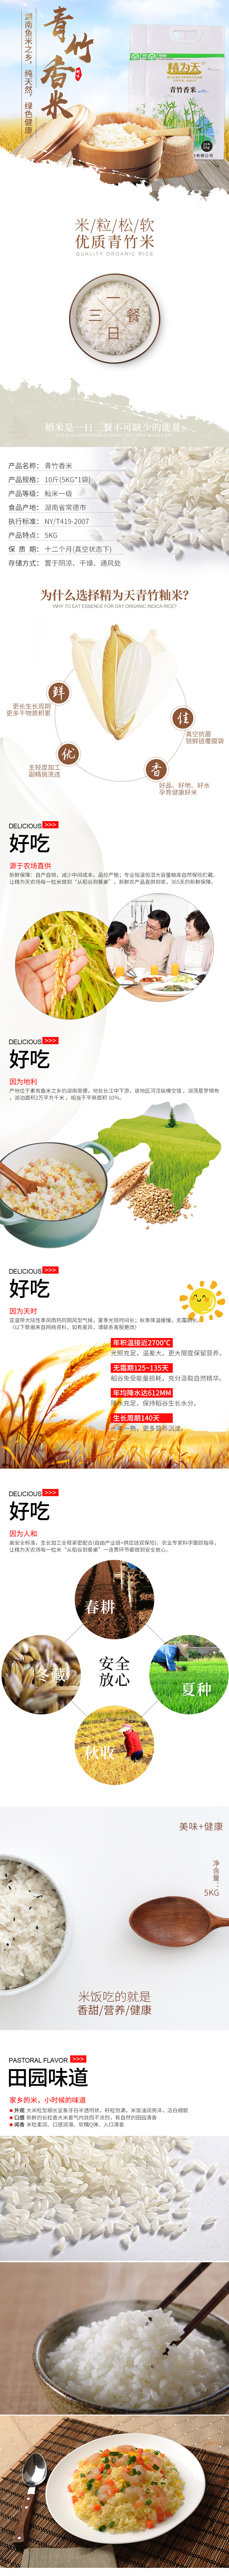 淘宝美工三季天猫东北大米水稻食品详情页作品